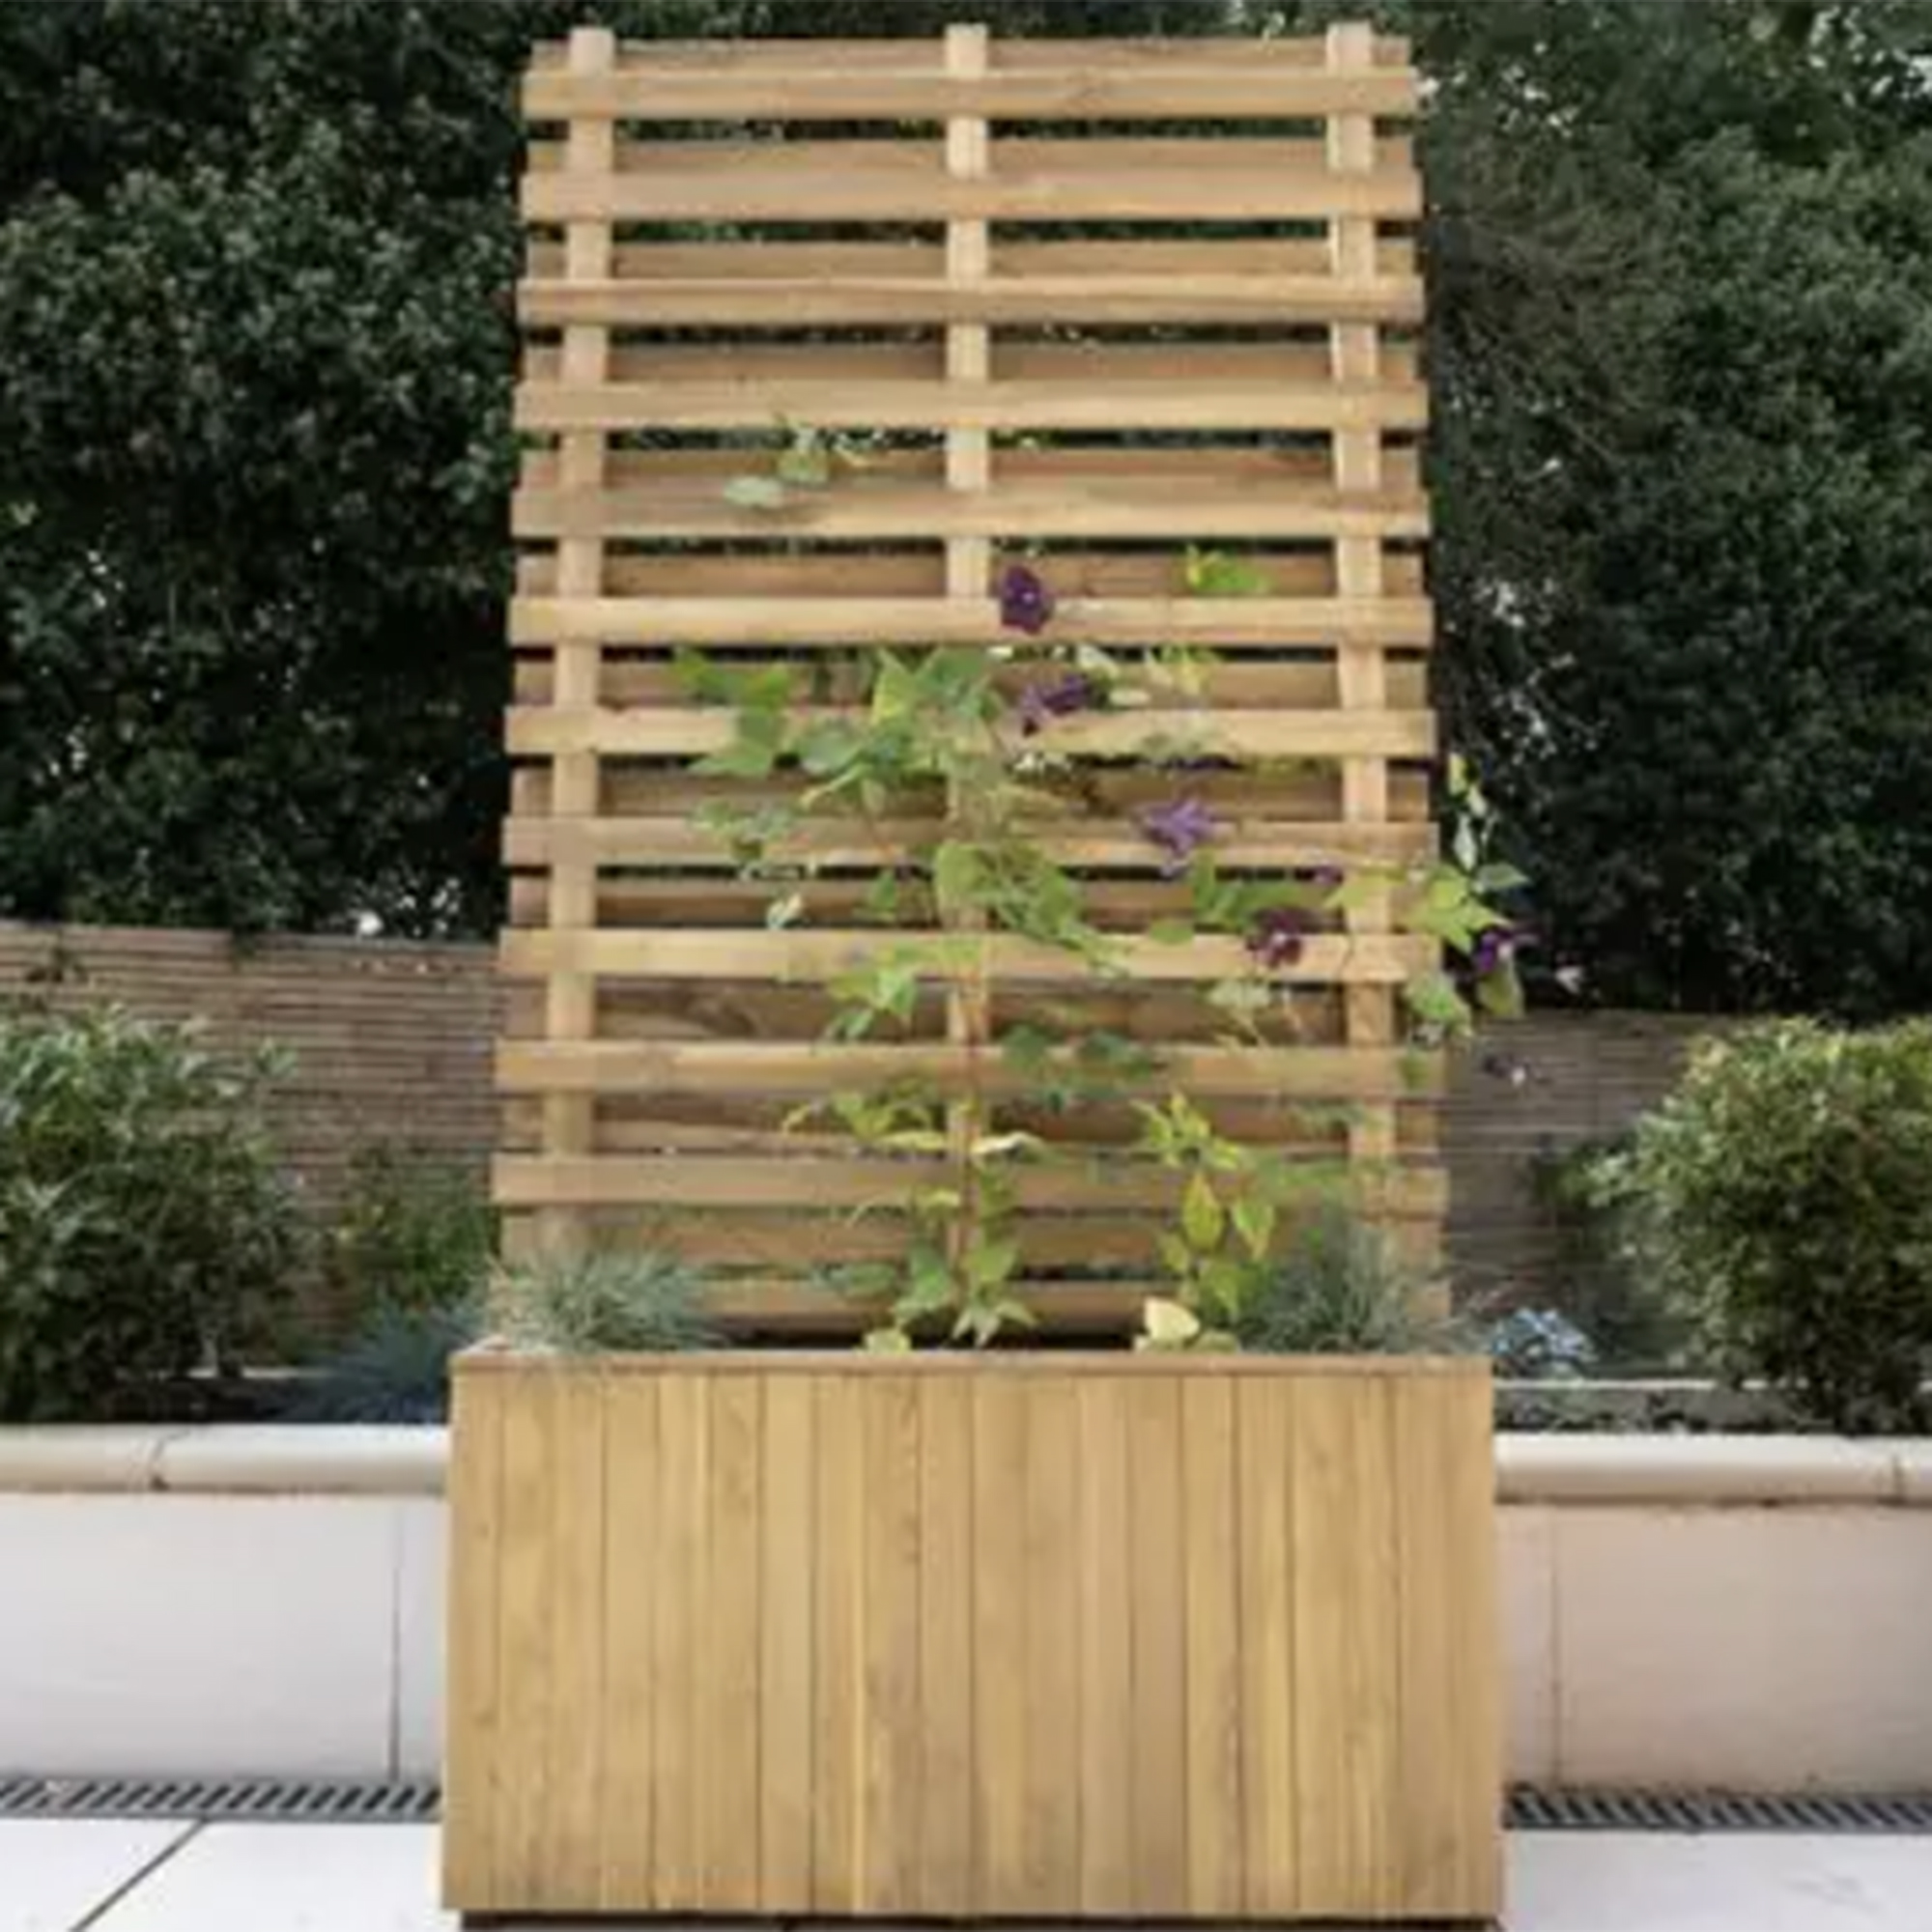 2'11 x 1'3 Forest Wooden Garden Living Wall Planter (0.9m x 0.39m)